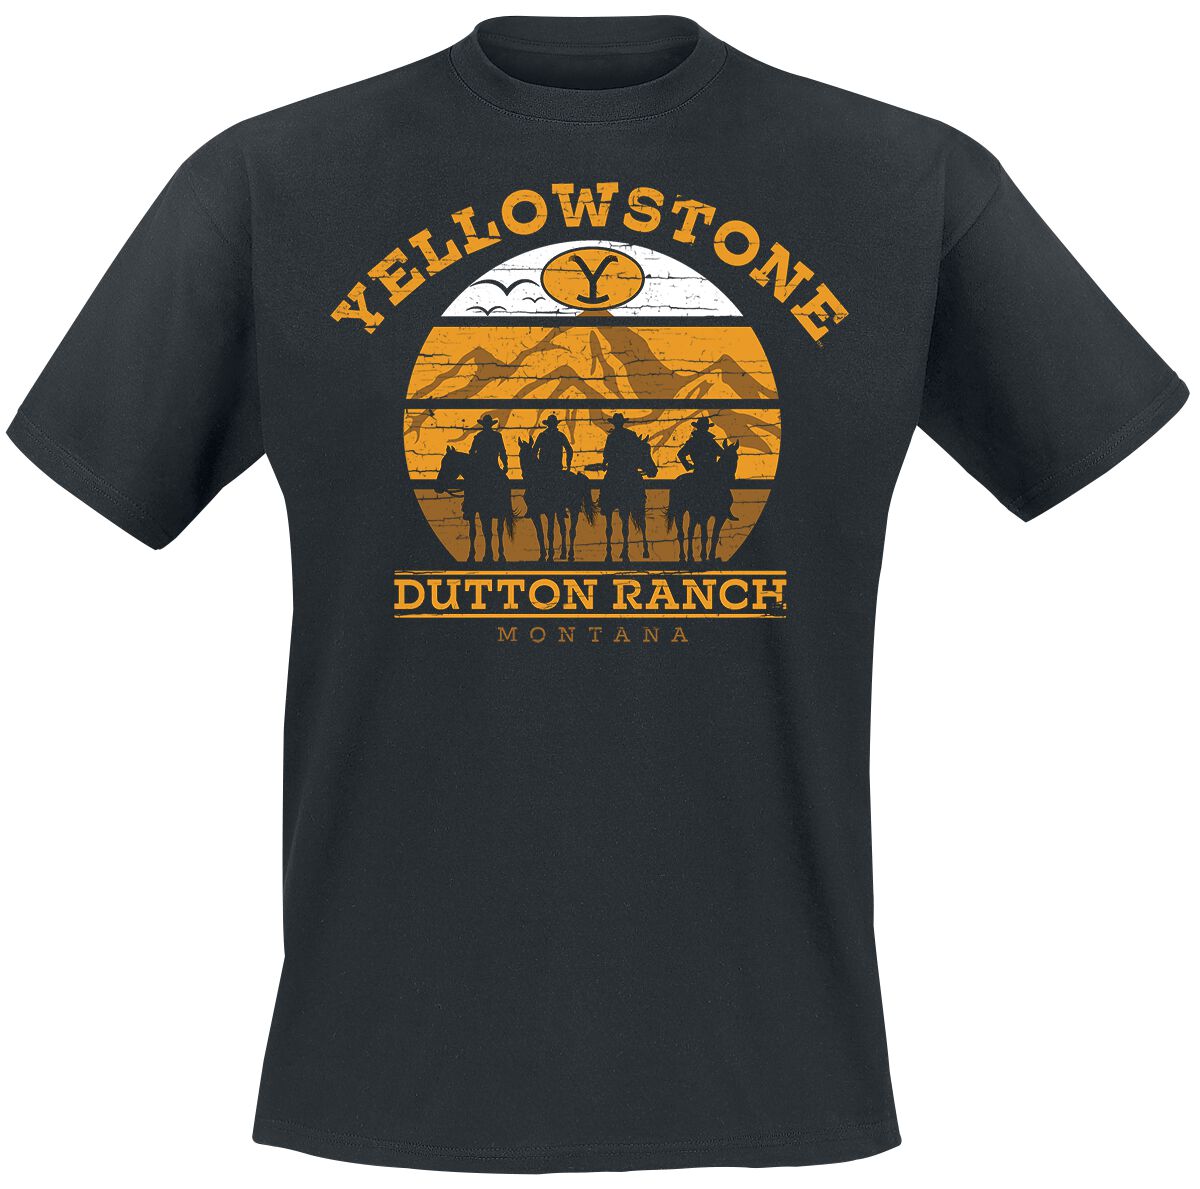 Yellowstone T-Shirt - Cowboys - S bis XXL - für Männer - Größe XXL - schwarz  - Lizenzierter Fanartikel von Yellowstone